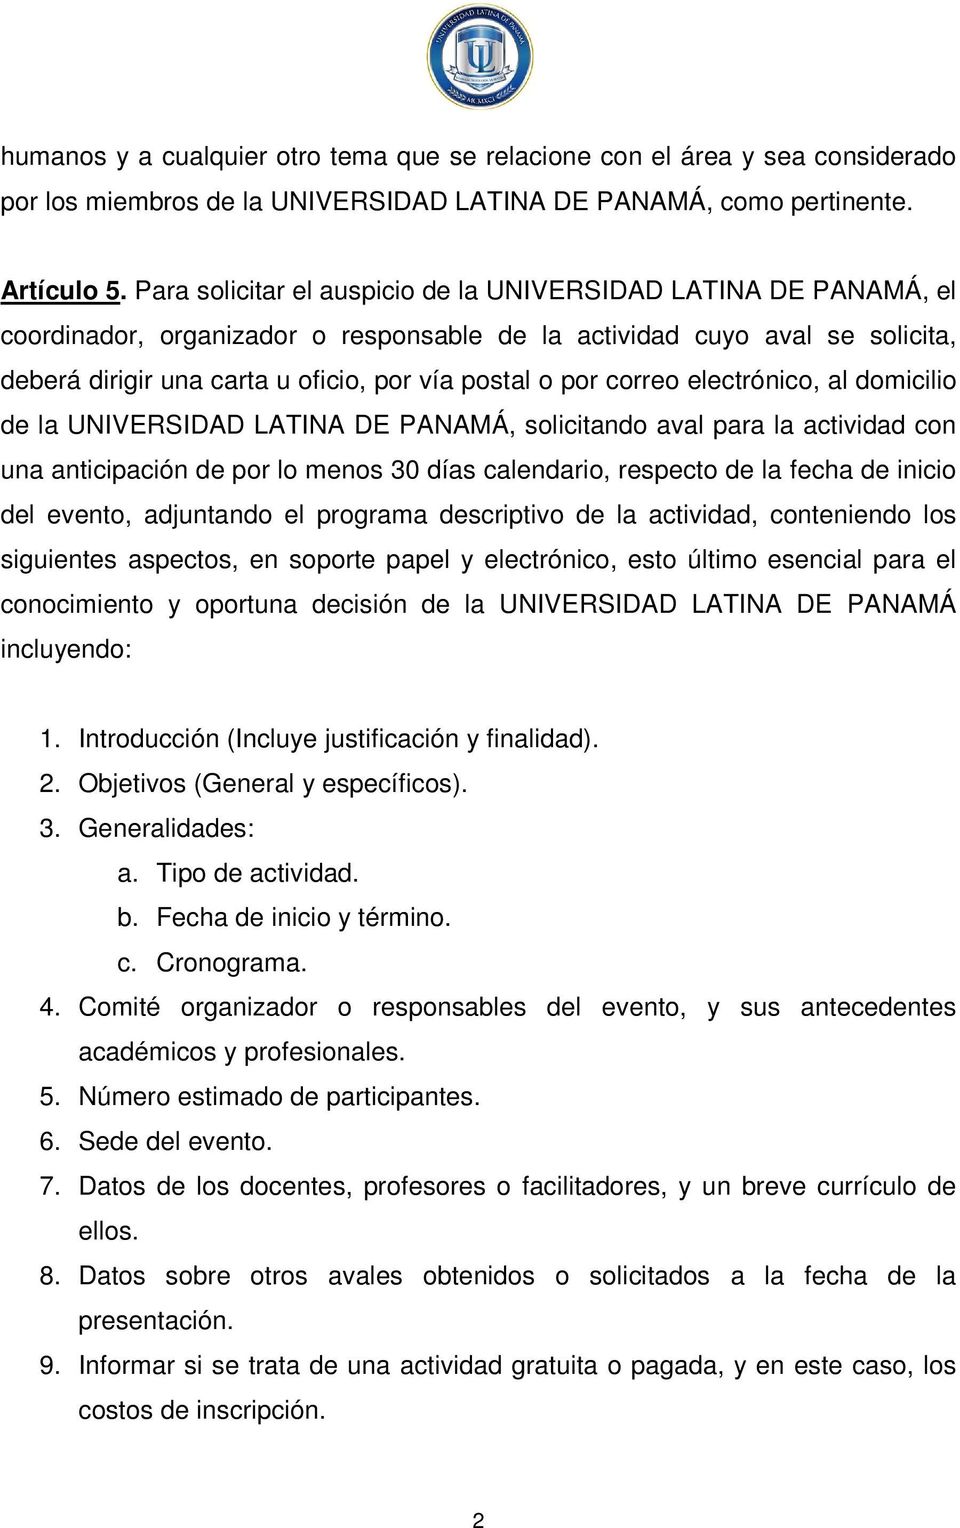 correo electrónico, al domicilio de la UNIVERSIDAD LATINA DE PANAMÁ, solicitando aval para la actividad con una anticipación de por lo menos 30 días calendario, respecto de la fecha de inicio del